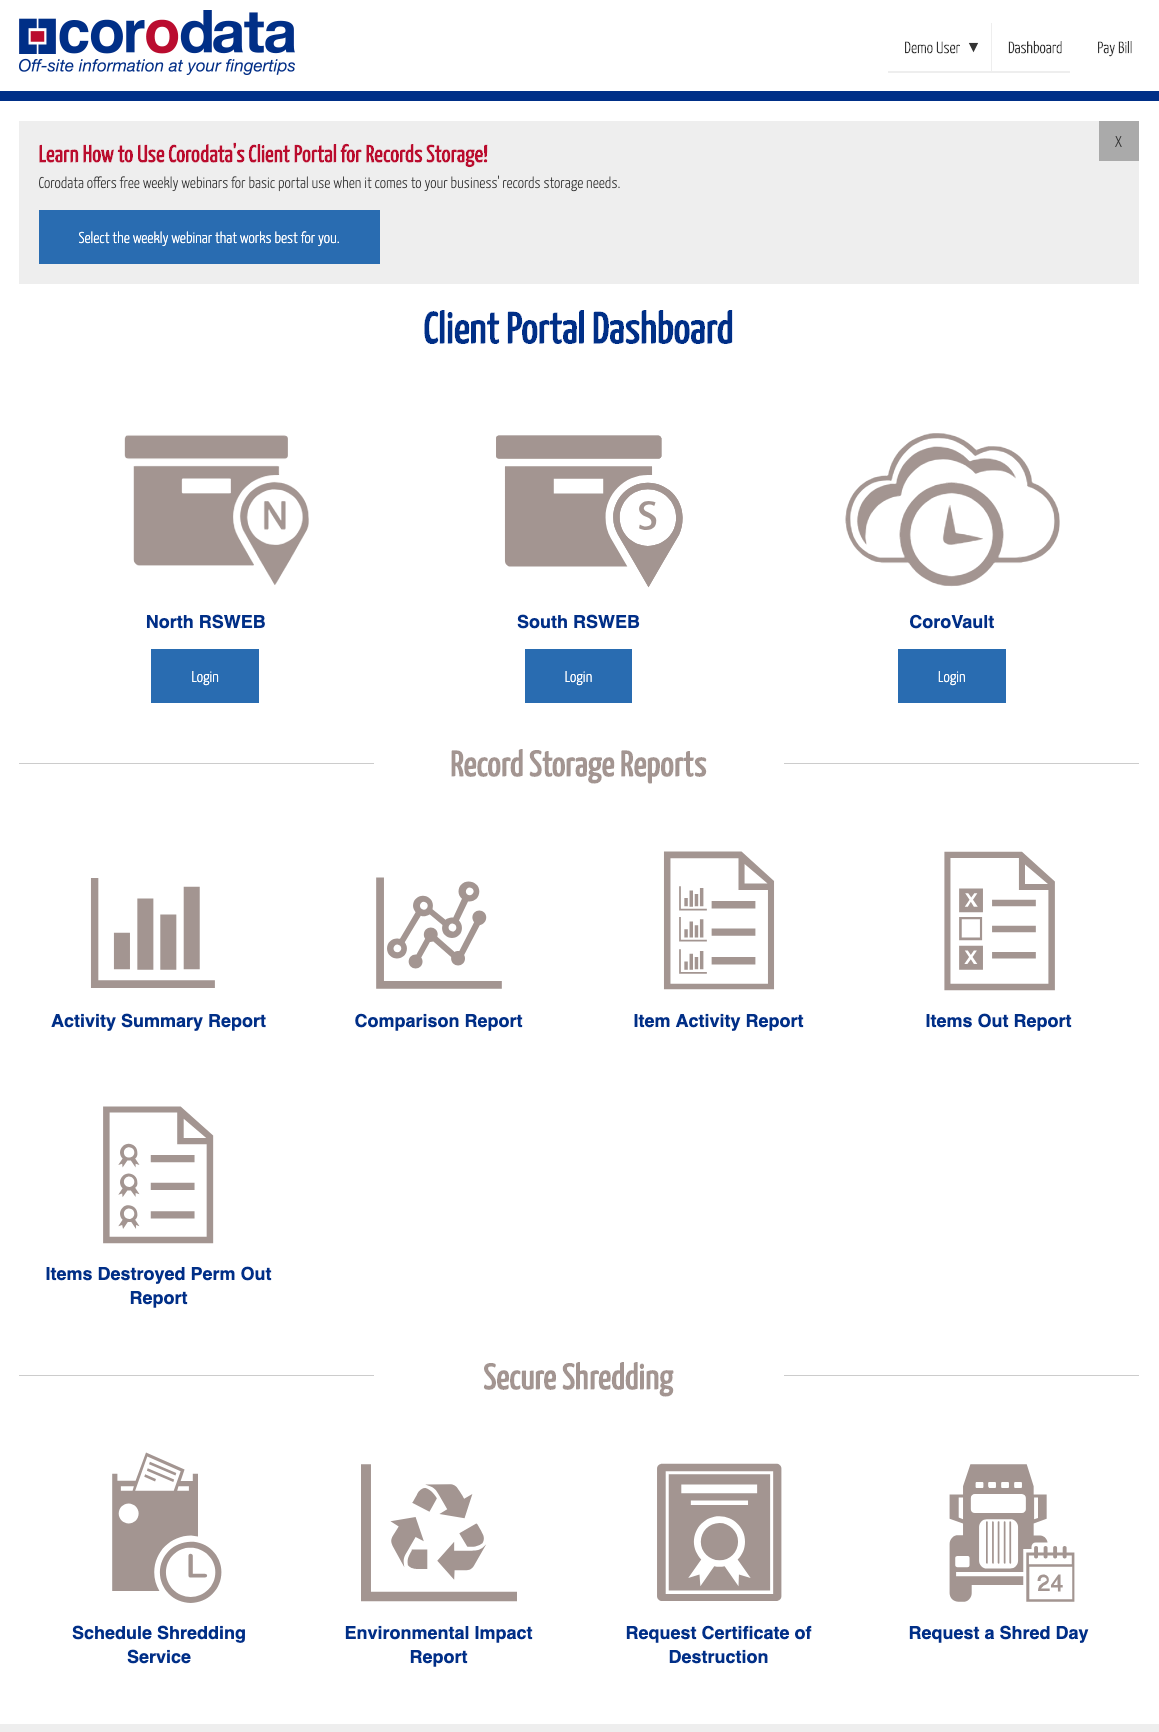 Portal Screenshot